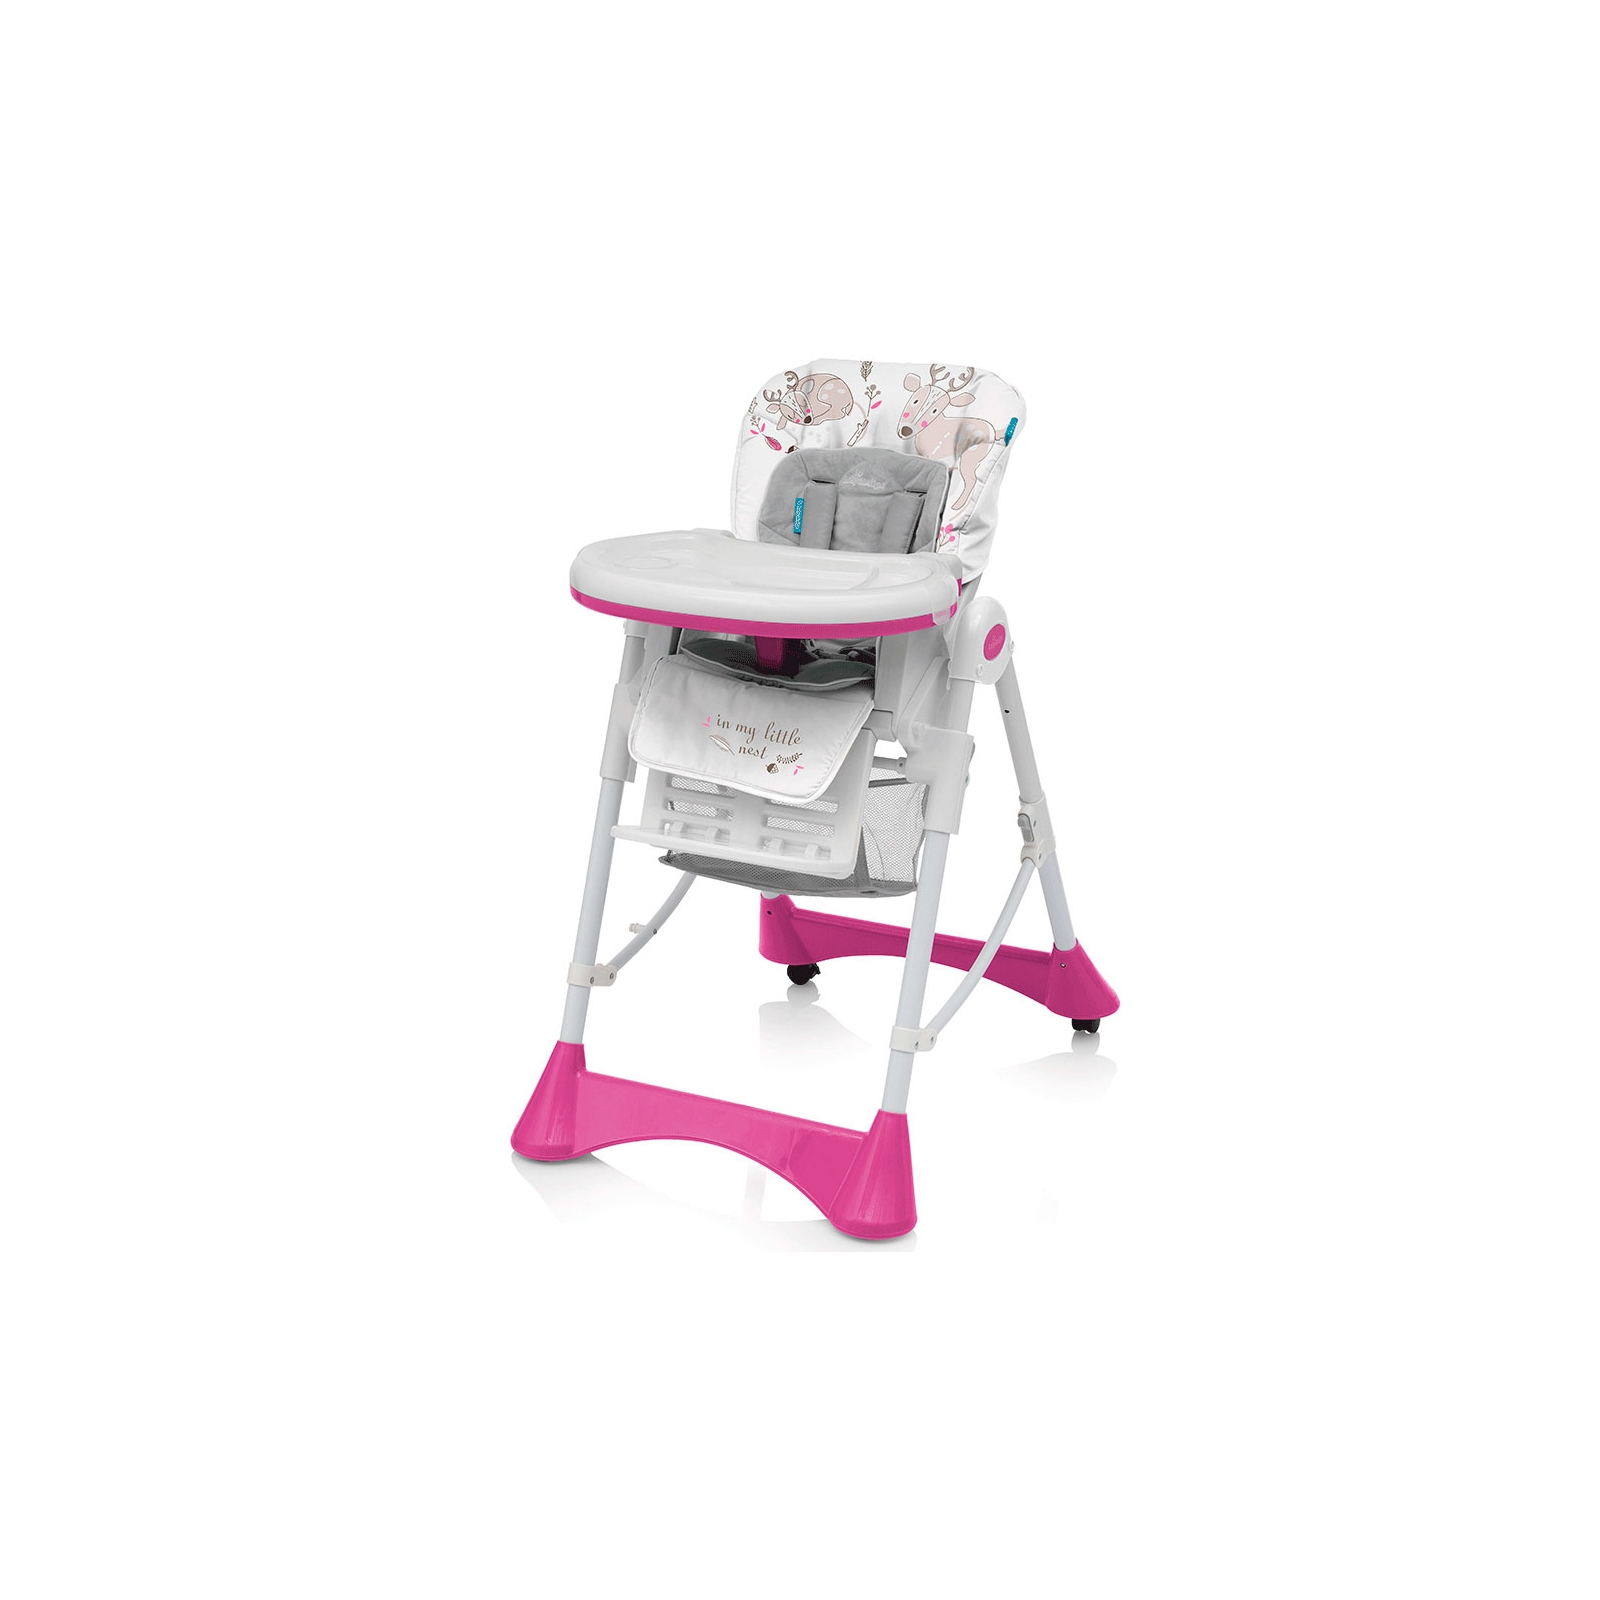 Стульчик для кормления Baby Design Pepe New 08 Pink (292255)